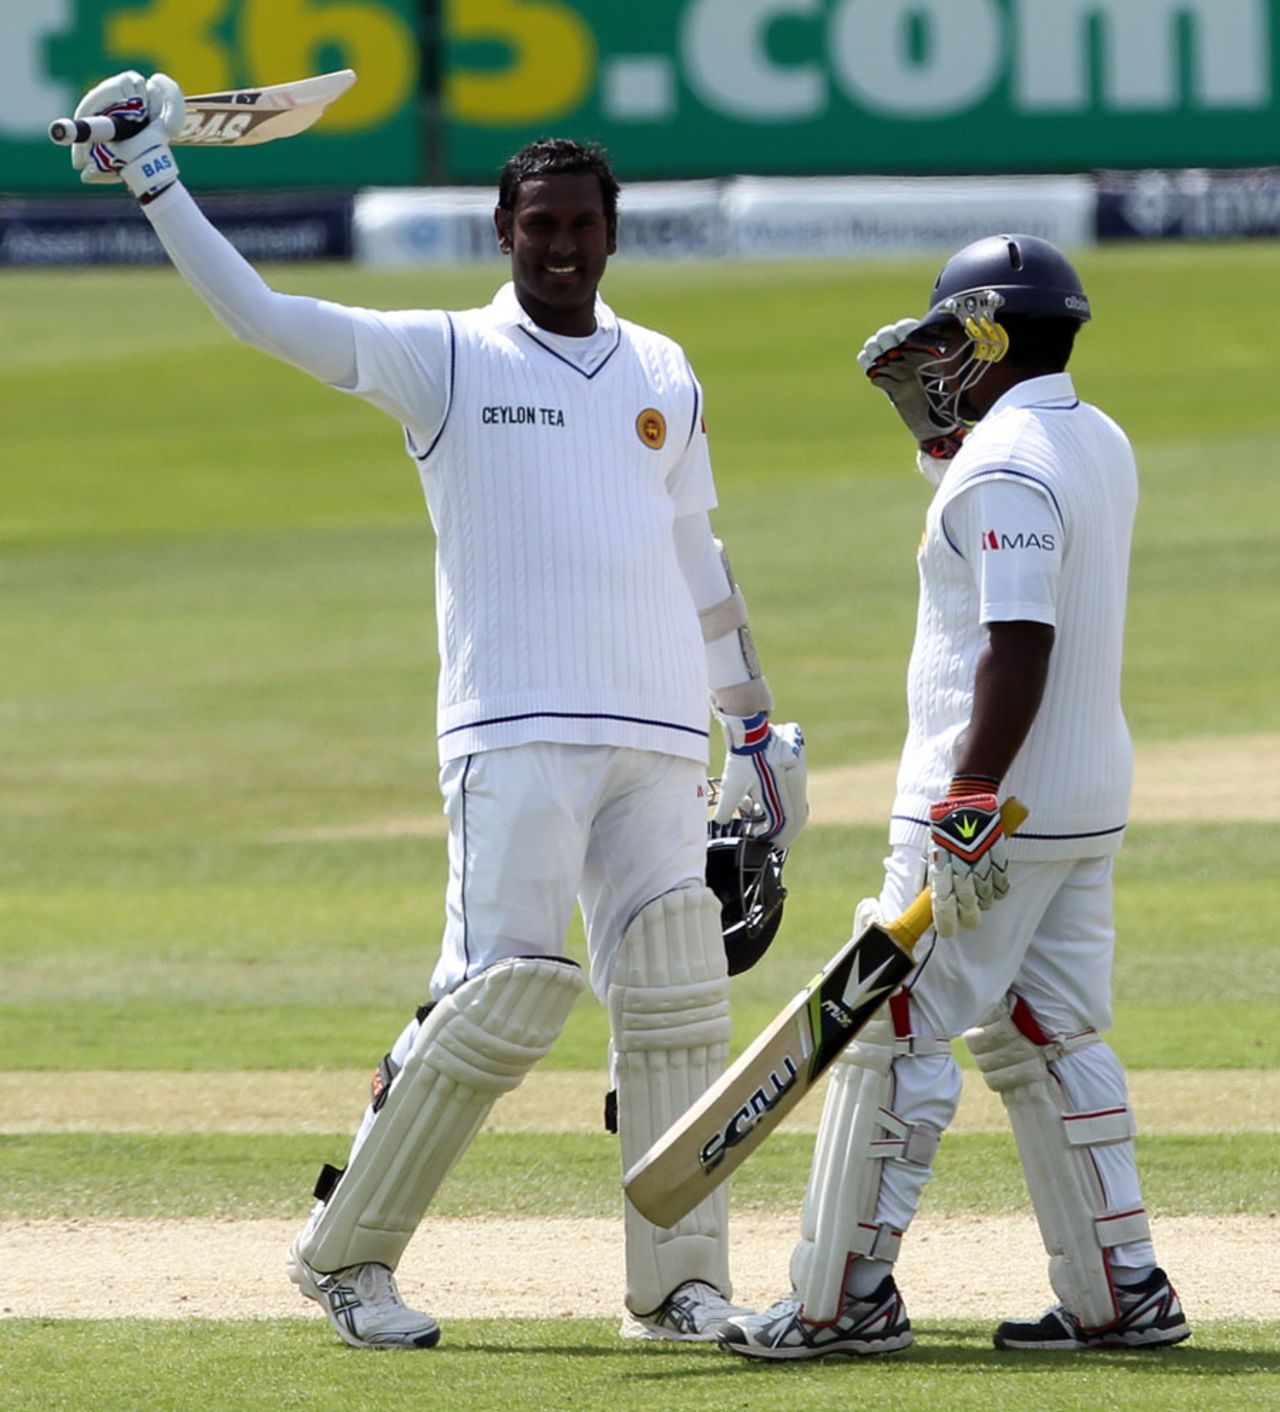 Rangana Herath accompanied Angelo Mathews to his hundred, England v Sri Lanka, 2nd Investec Test, Headingley, 4th day, June 23, 2014